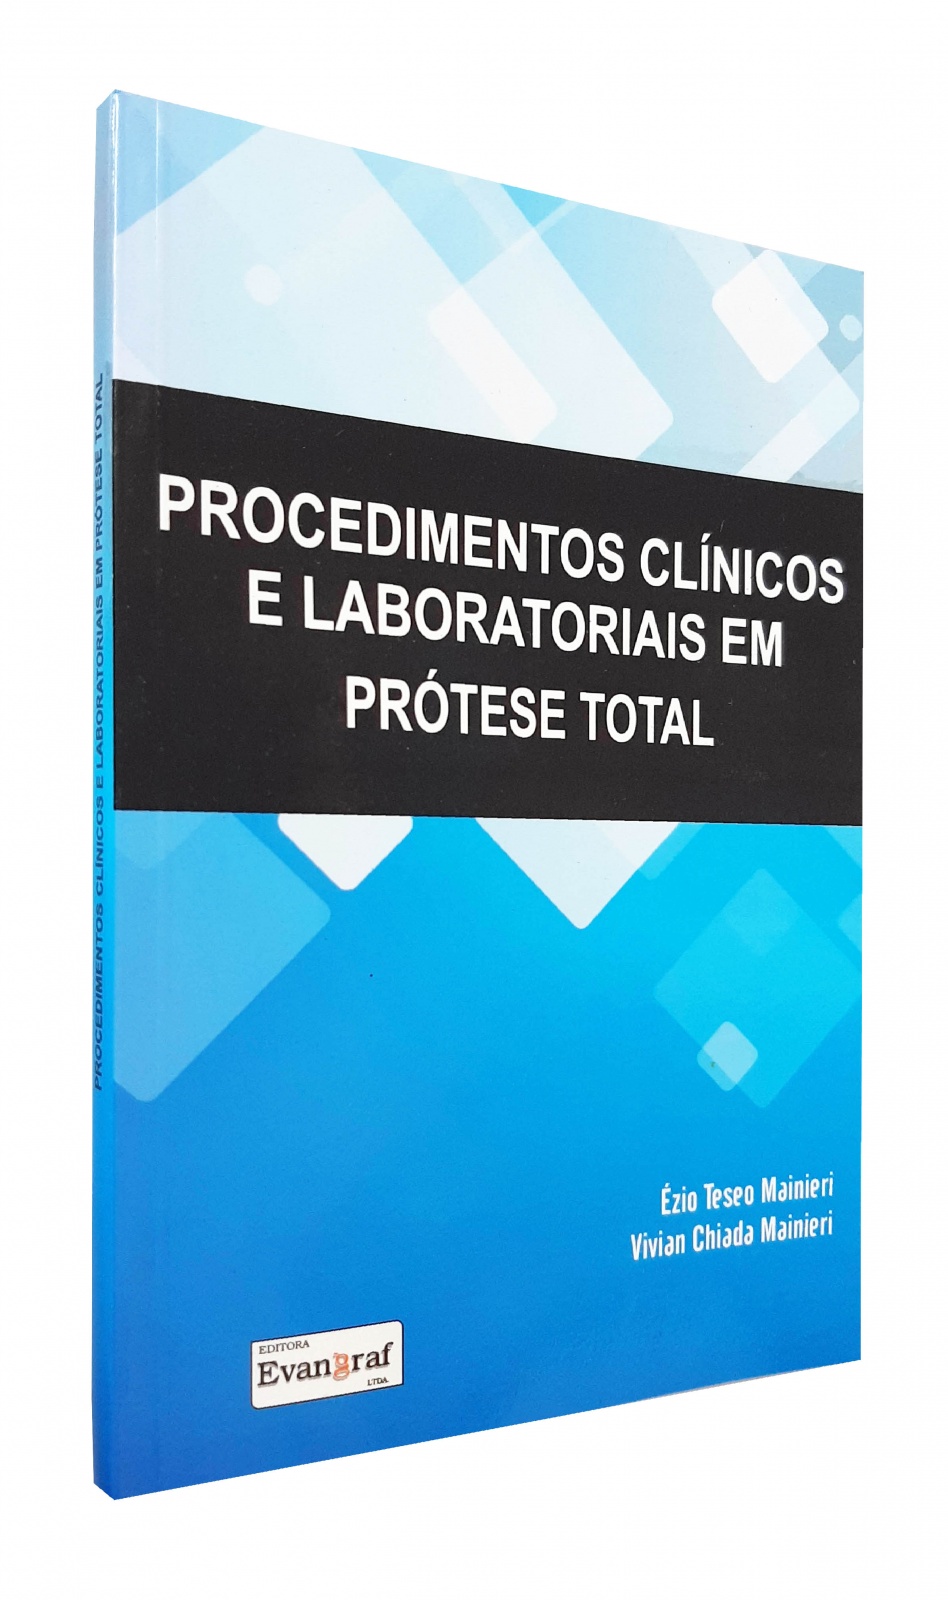 Procedimentos Clínicos E Laboratoriais Em Prótese Total